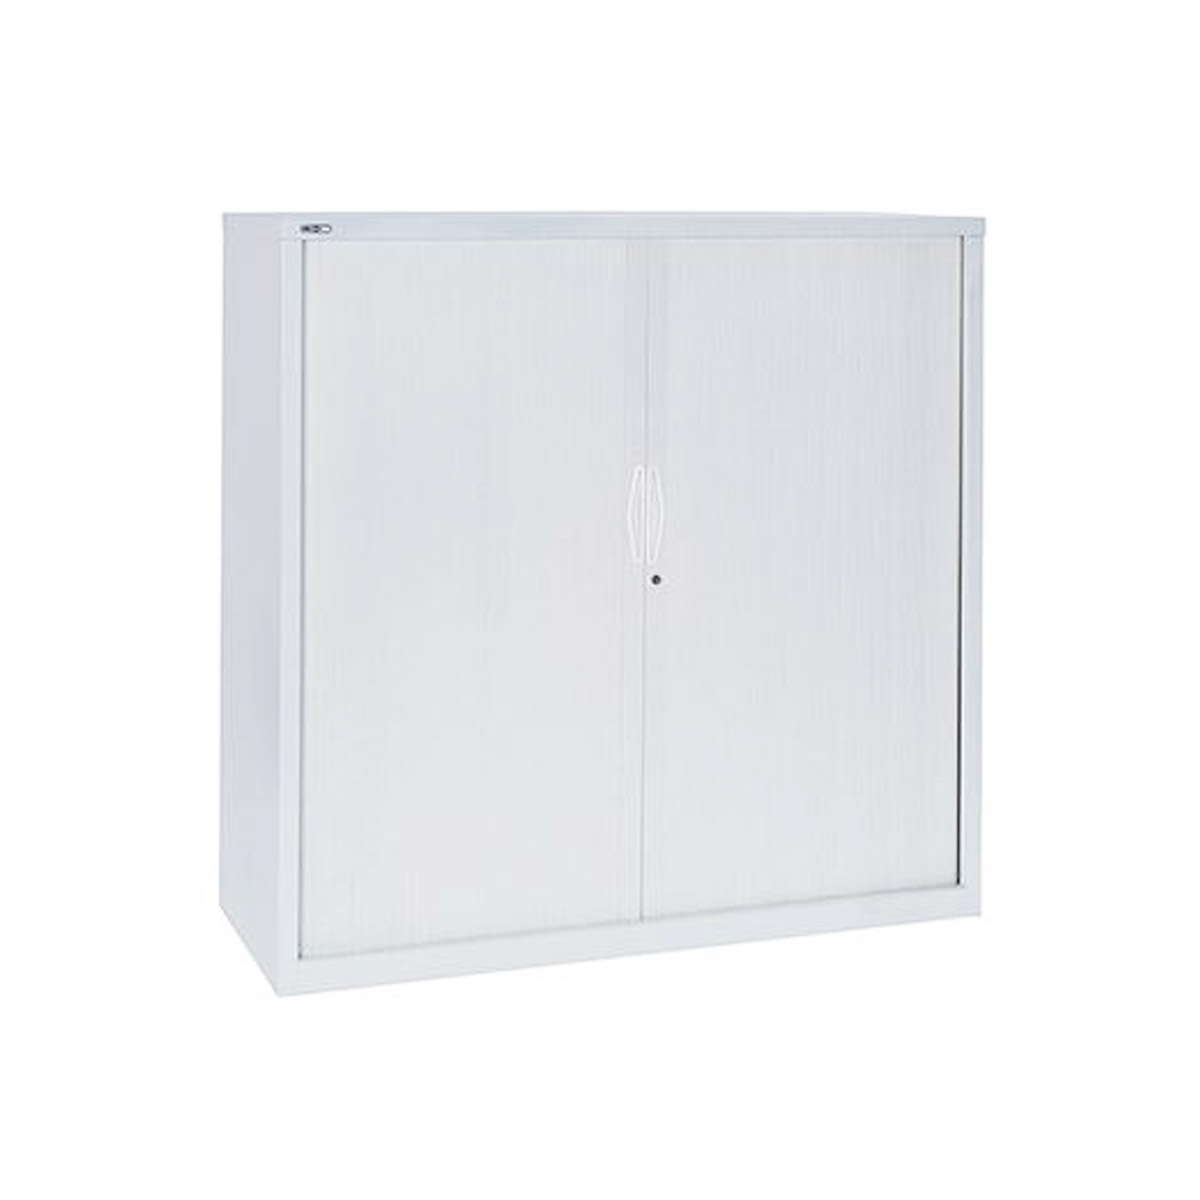 tambour-door-cupboards-2-cabinets-lockers-benchmark-shelving-storage-australia